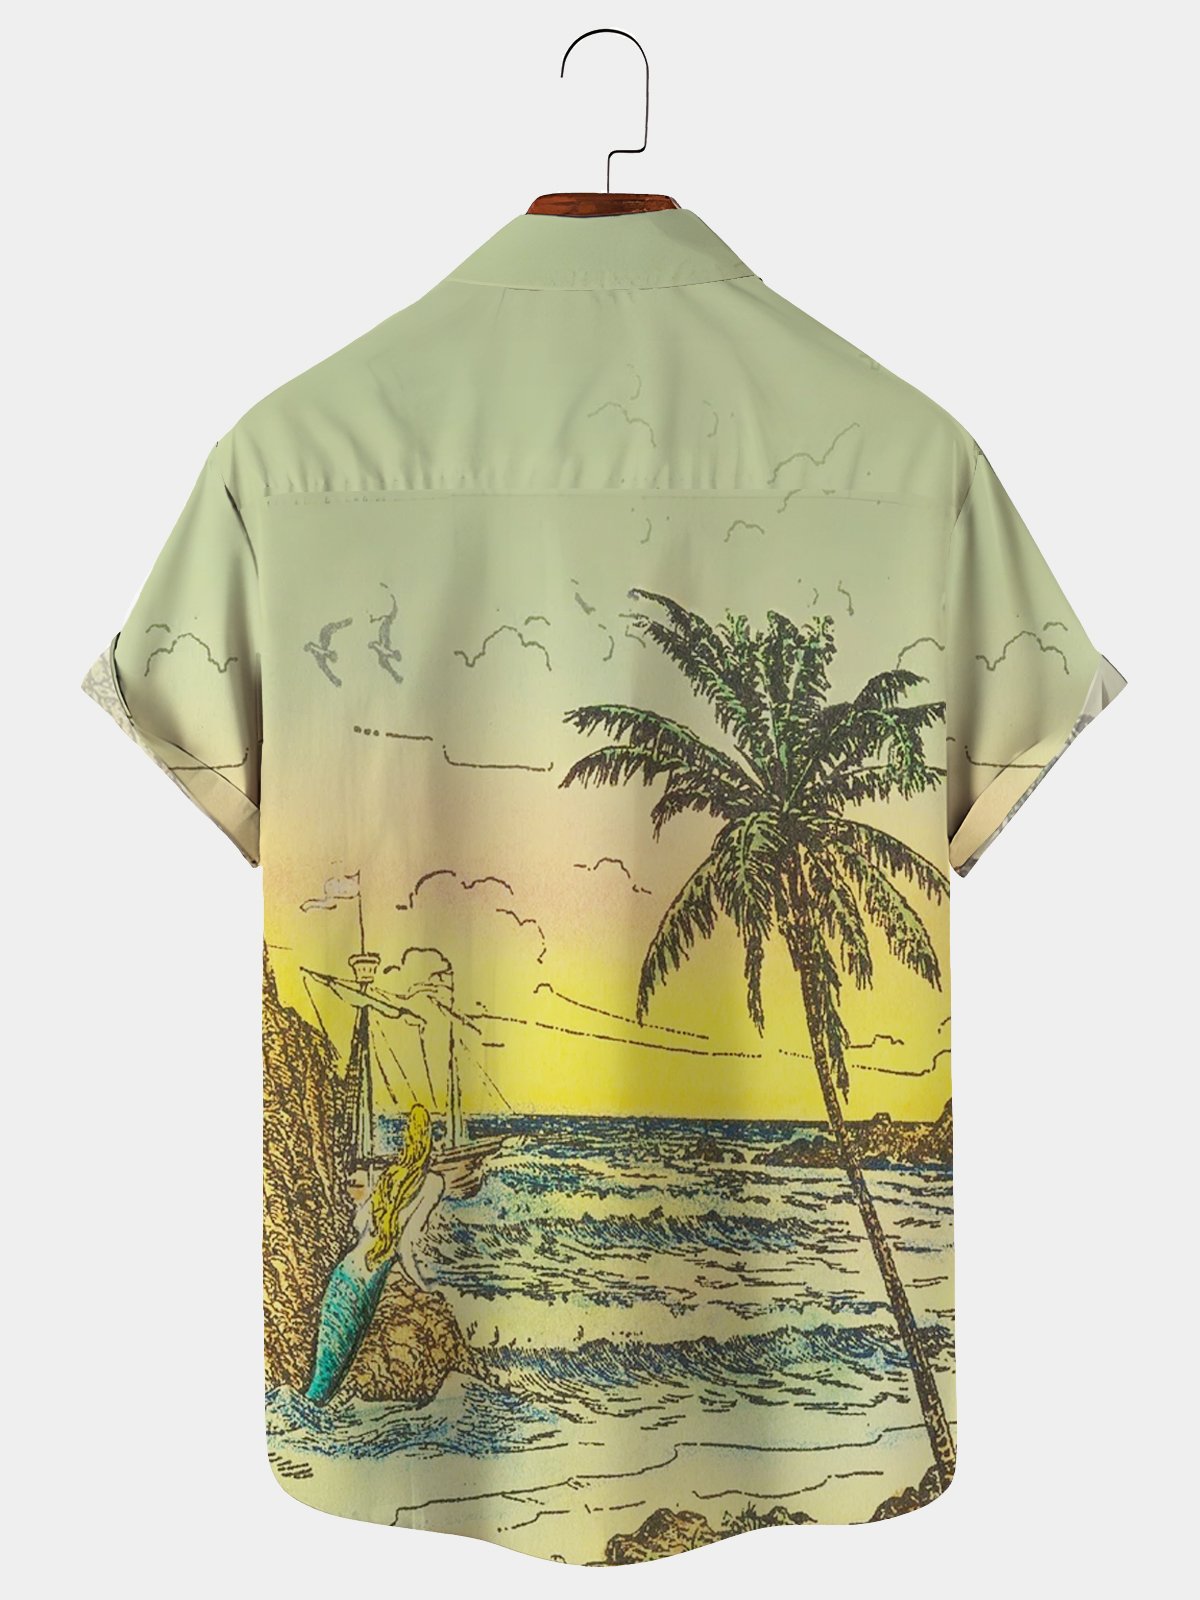 Royaura Coconut Tree Mermaid Beach Hawaiian Shirt Oversized Vacation Aloha Shirt